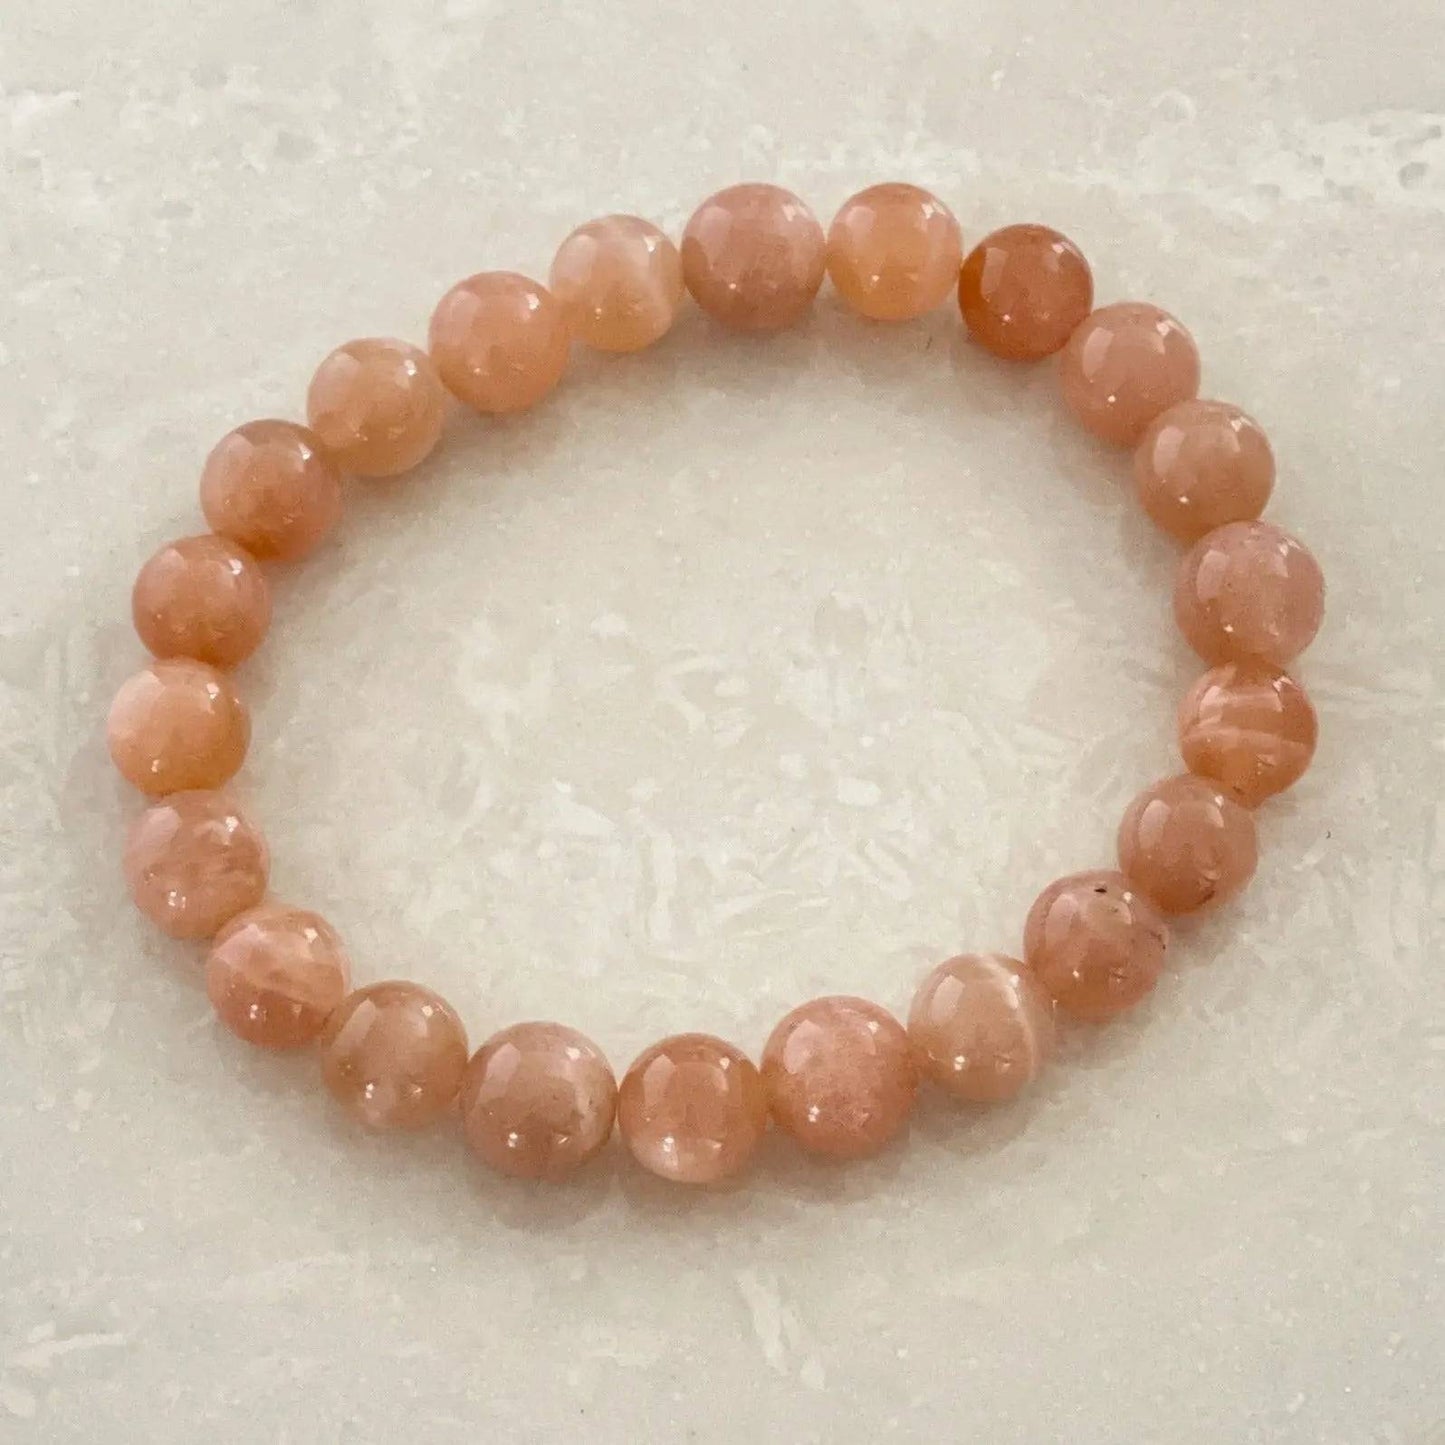 Peach Moonstone Bracelet - Uplift Beads